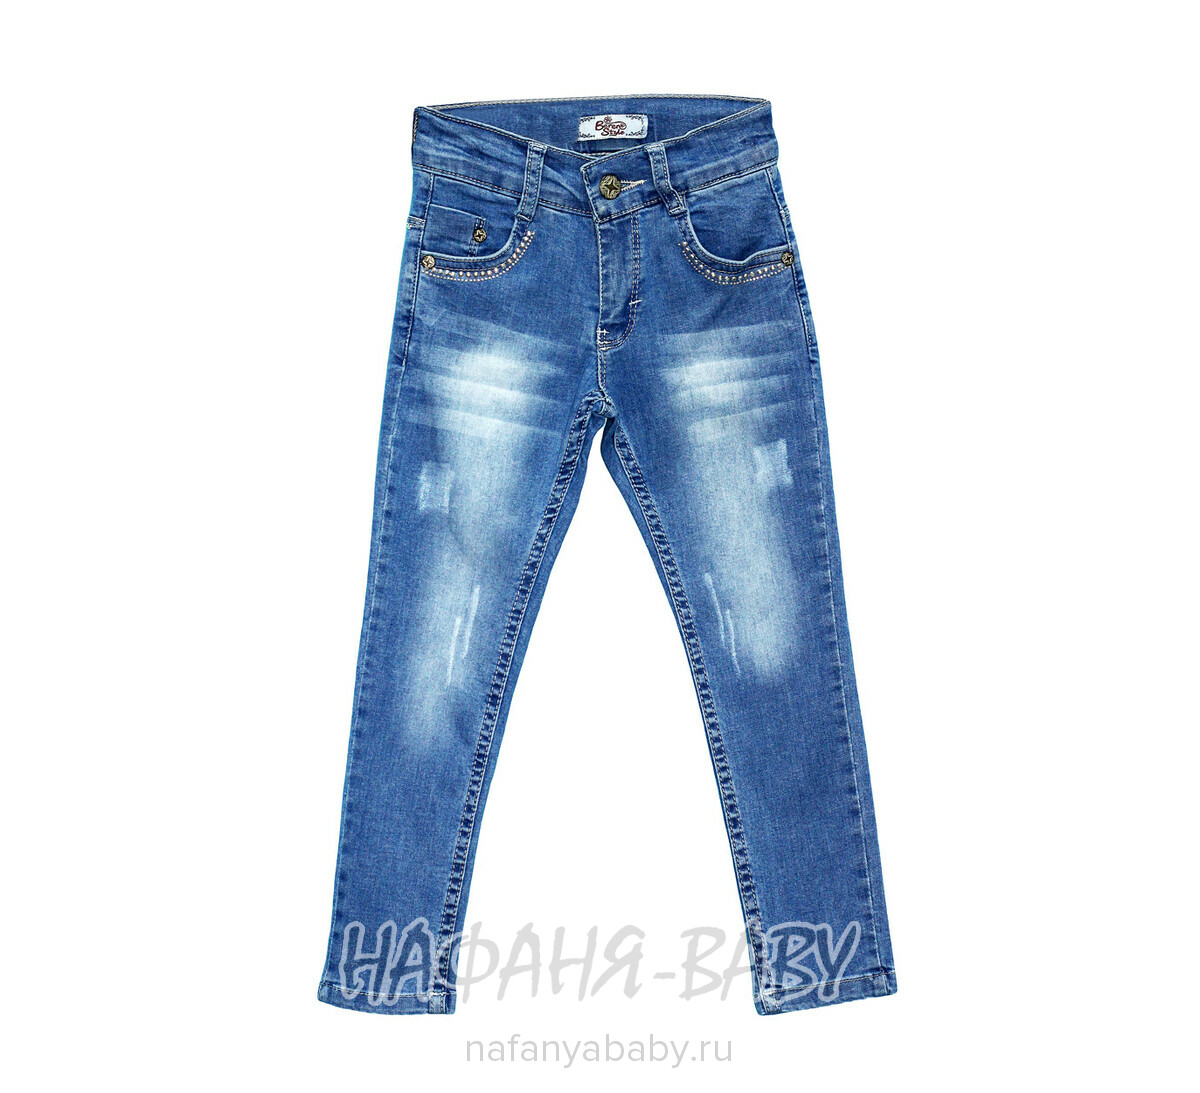 Детские джинсы BEREN STYLE арт: 8020, 1-4 года, 5-9 лет, оптом Турция